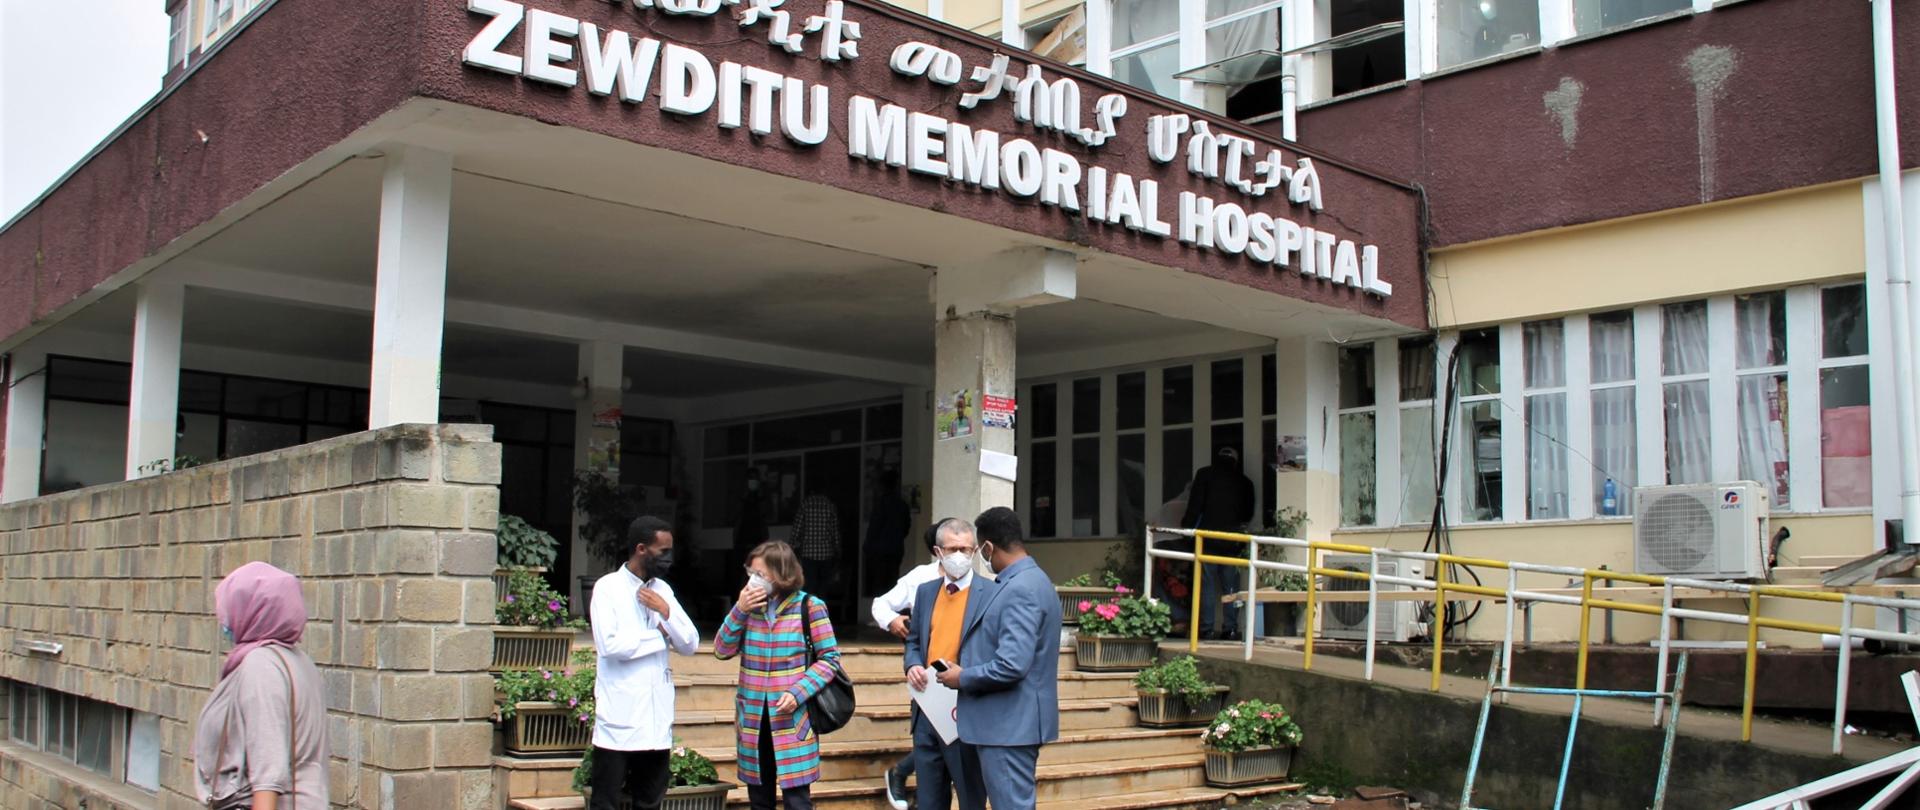 Amb. P. Bobak, I Radca D. Bobak, Dr Zelalem Chimdesa – dyrektor szpitala Zewditu Memorial Hospital, Dr Henok Fisseha – koordynator stoją przed wejściem do placówki medycznej